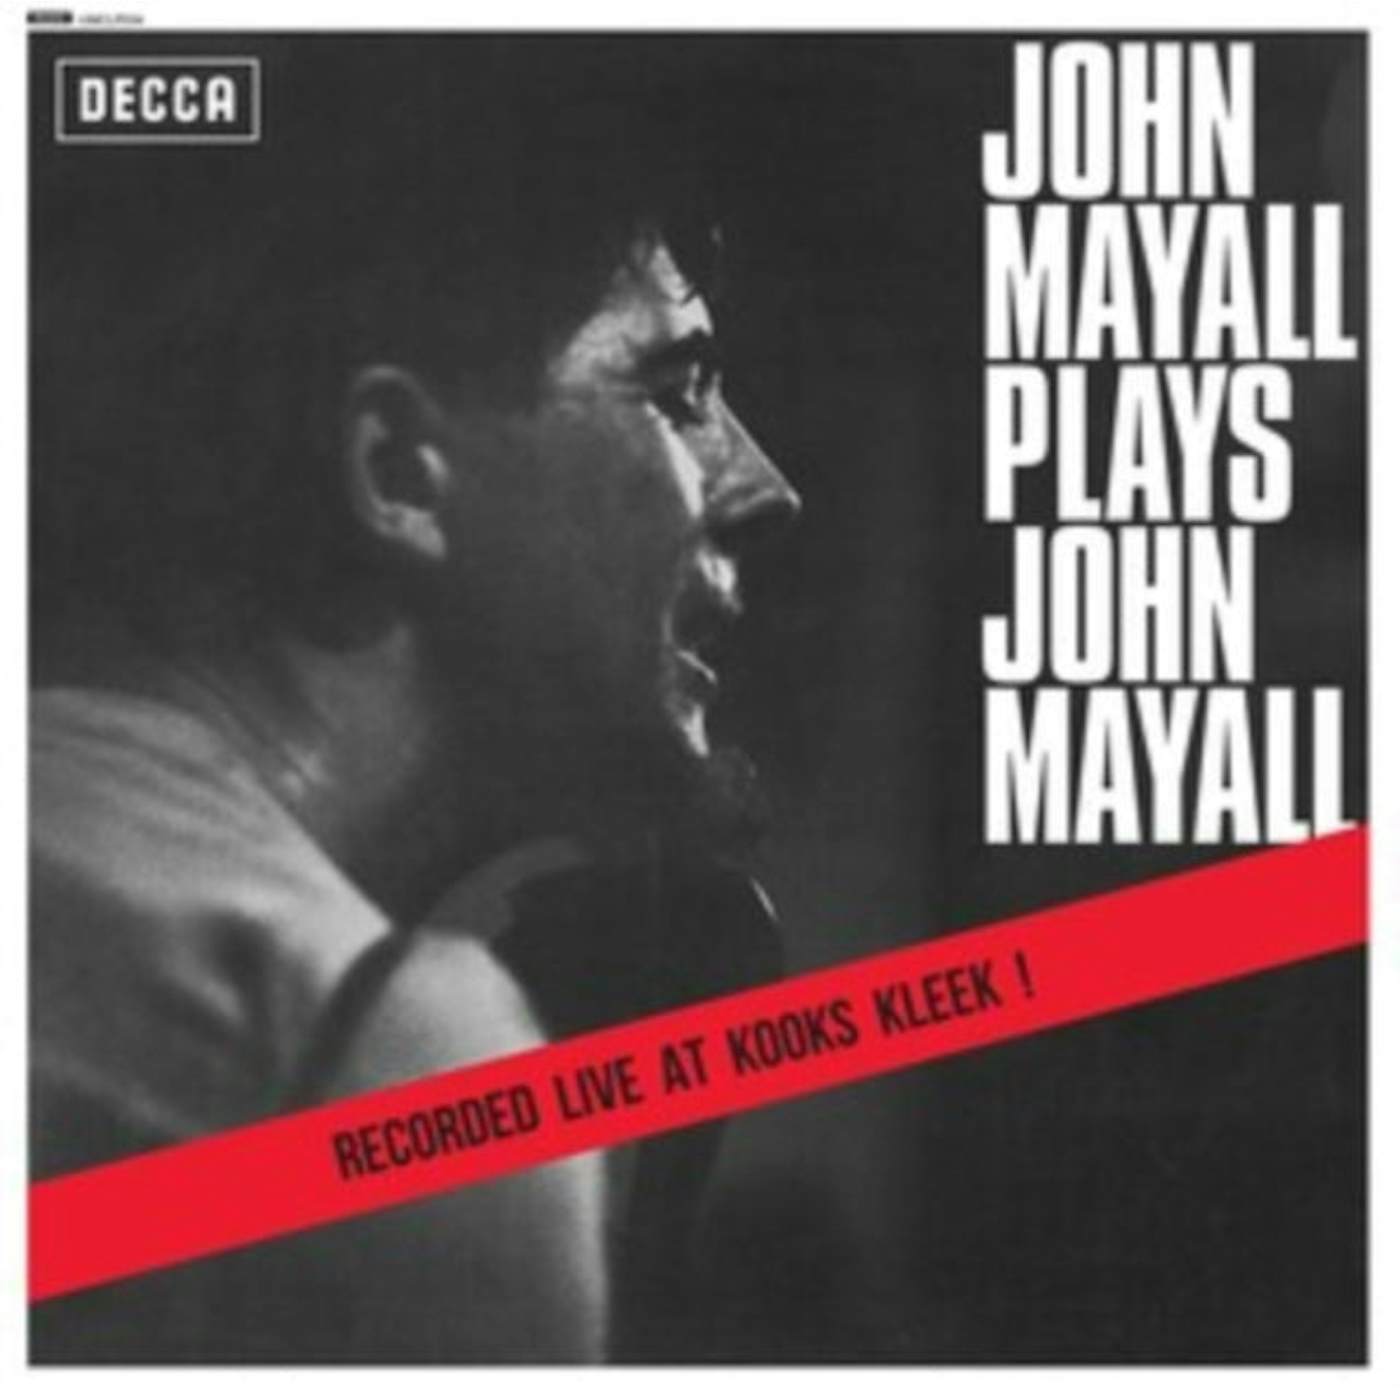 John Mayall & The Bluesbreakers LP - John Mayall Plays John Mayall (Vinyl)